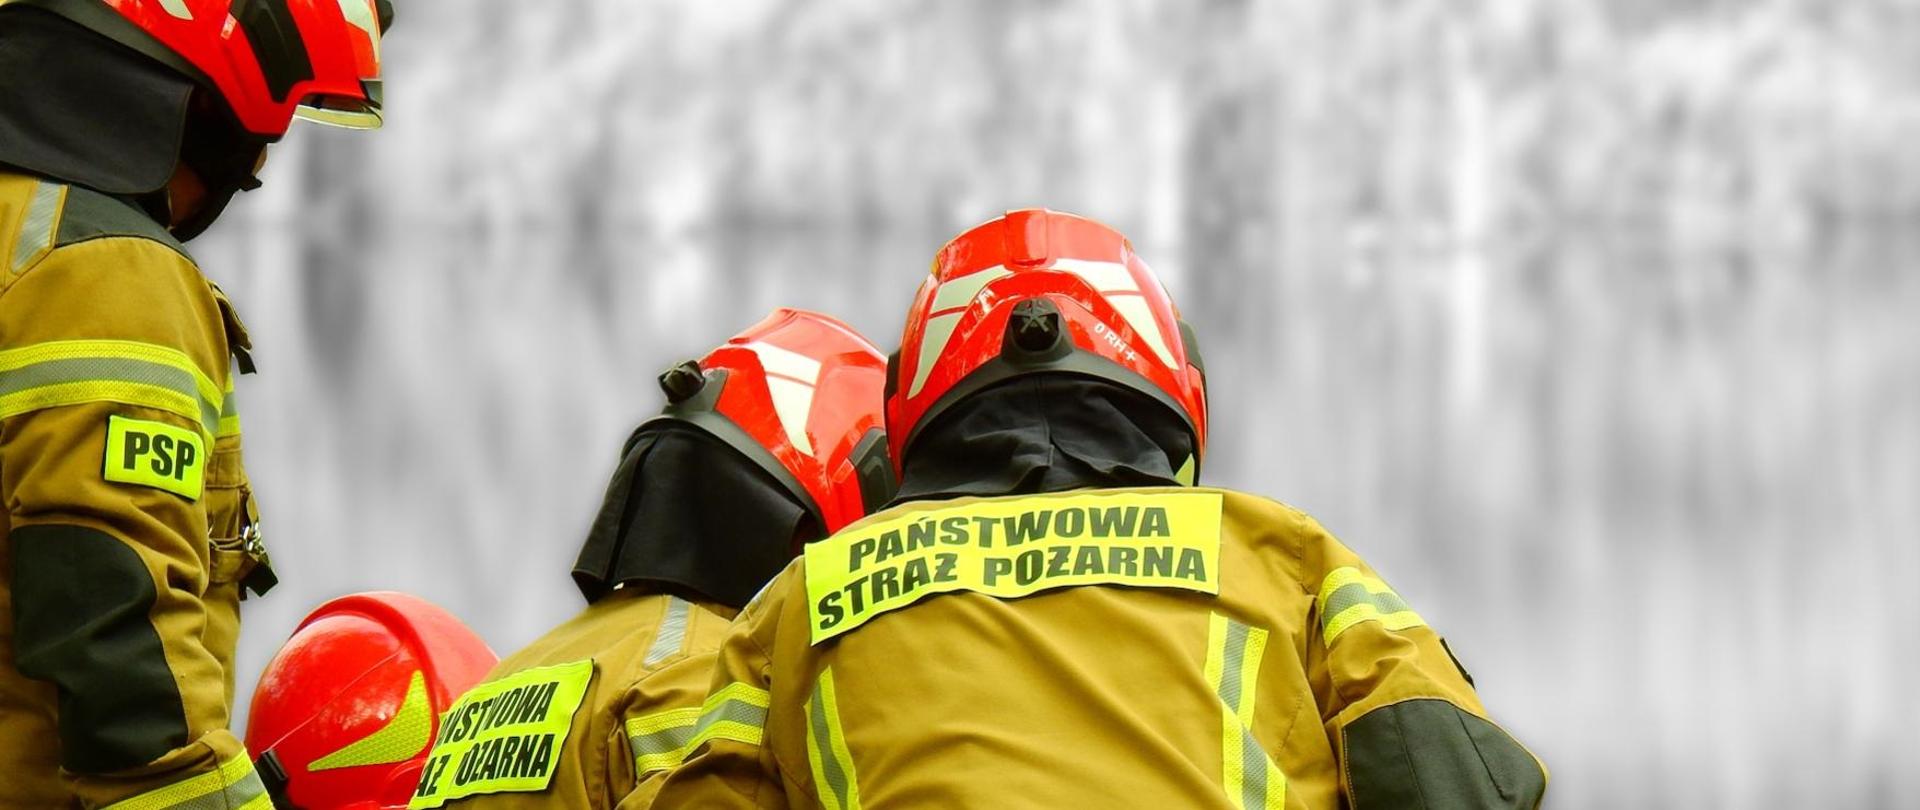 Zdjęcie przedstawia strażaków PSP, którzy ubrani w umundurowanie specjalne z hełmami na głowie podejmują działania. Strażacy znajdują się plecami do osoby patrzącej na zdjęcie.